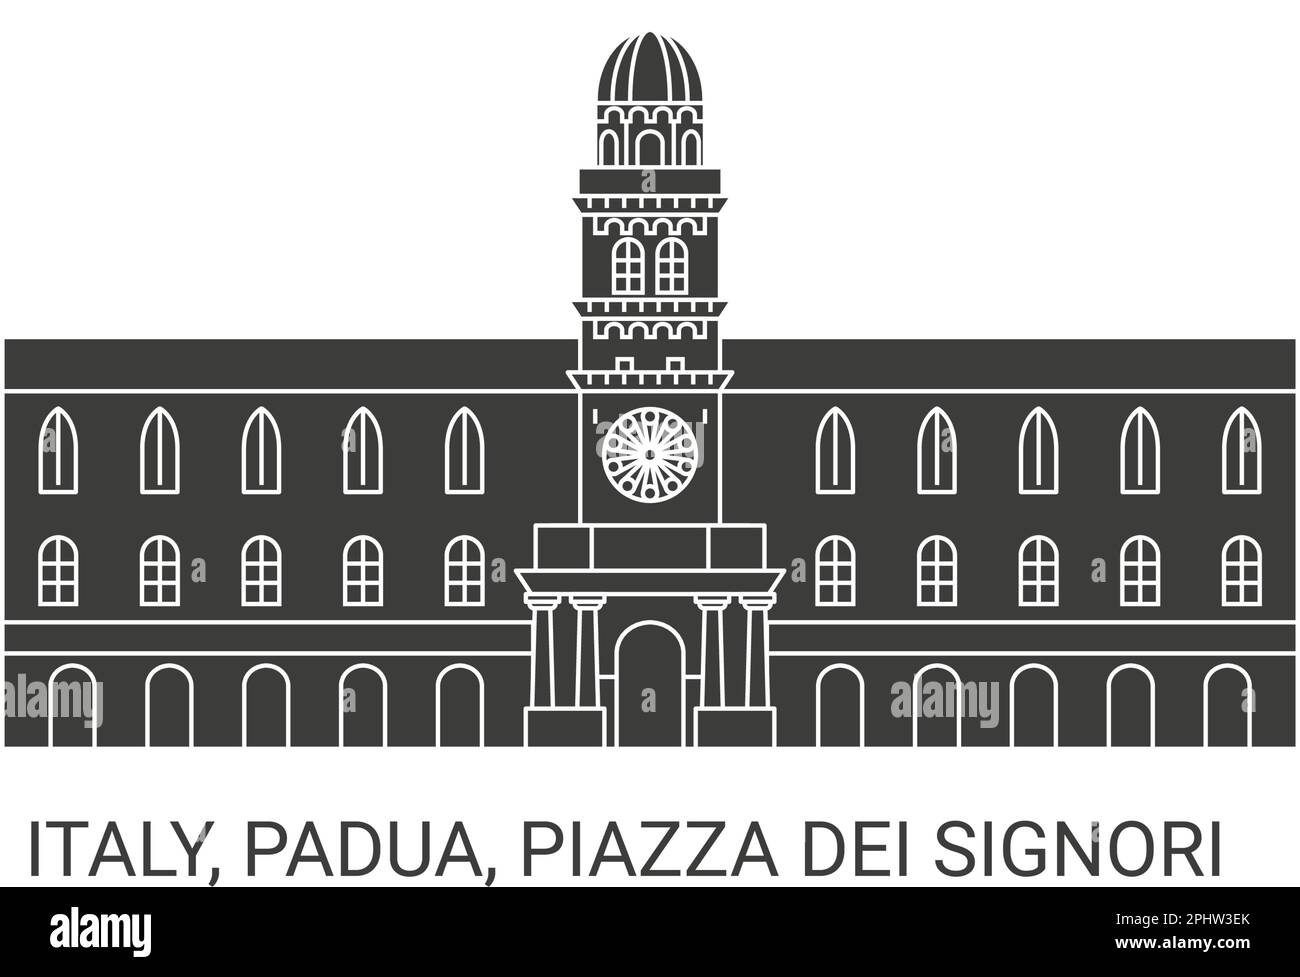 Italien, Padua, Piazza dei Signori, Reise-Wahrzeichen-Vektordarstellung Stock Vektor